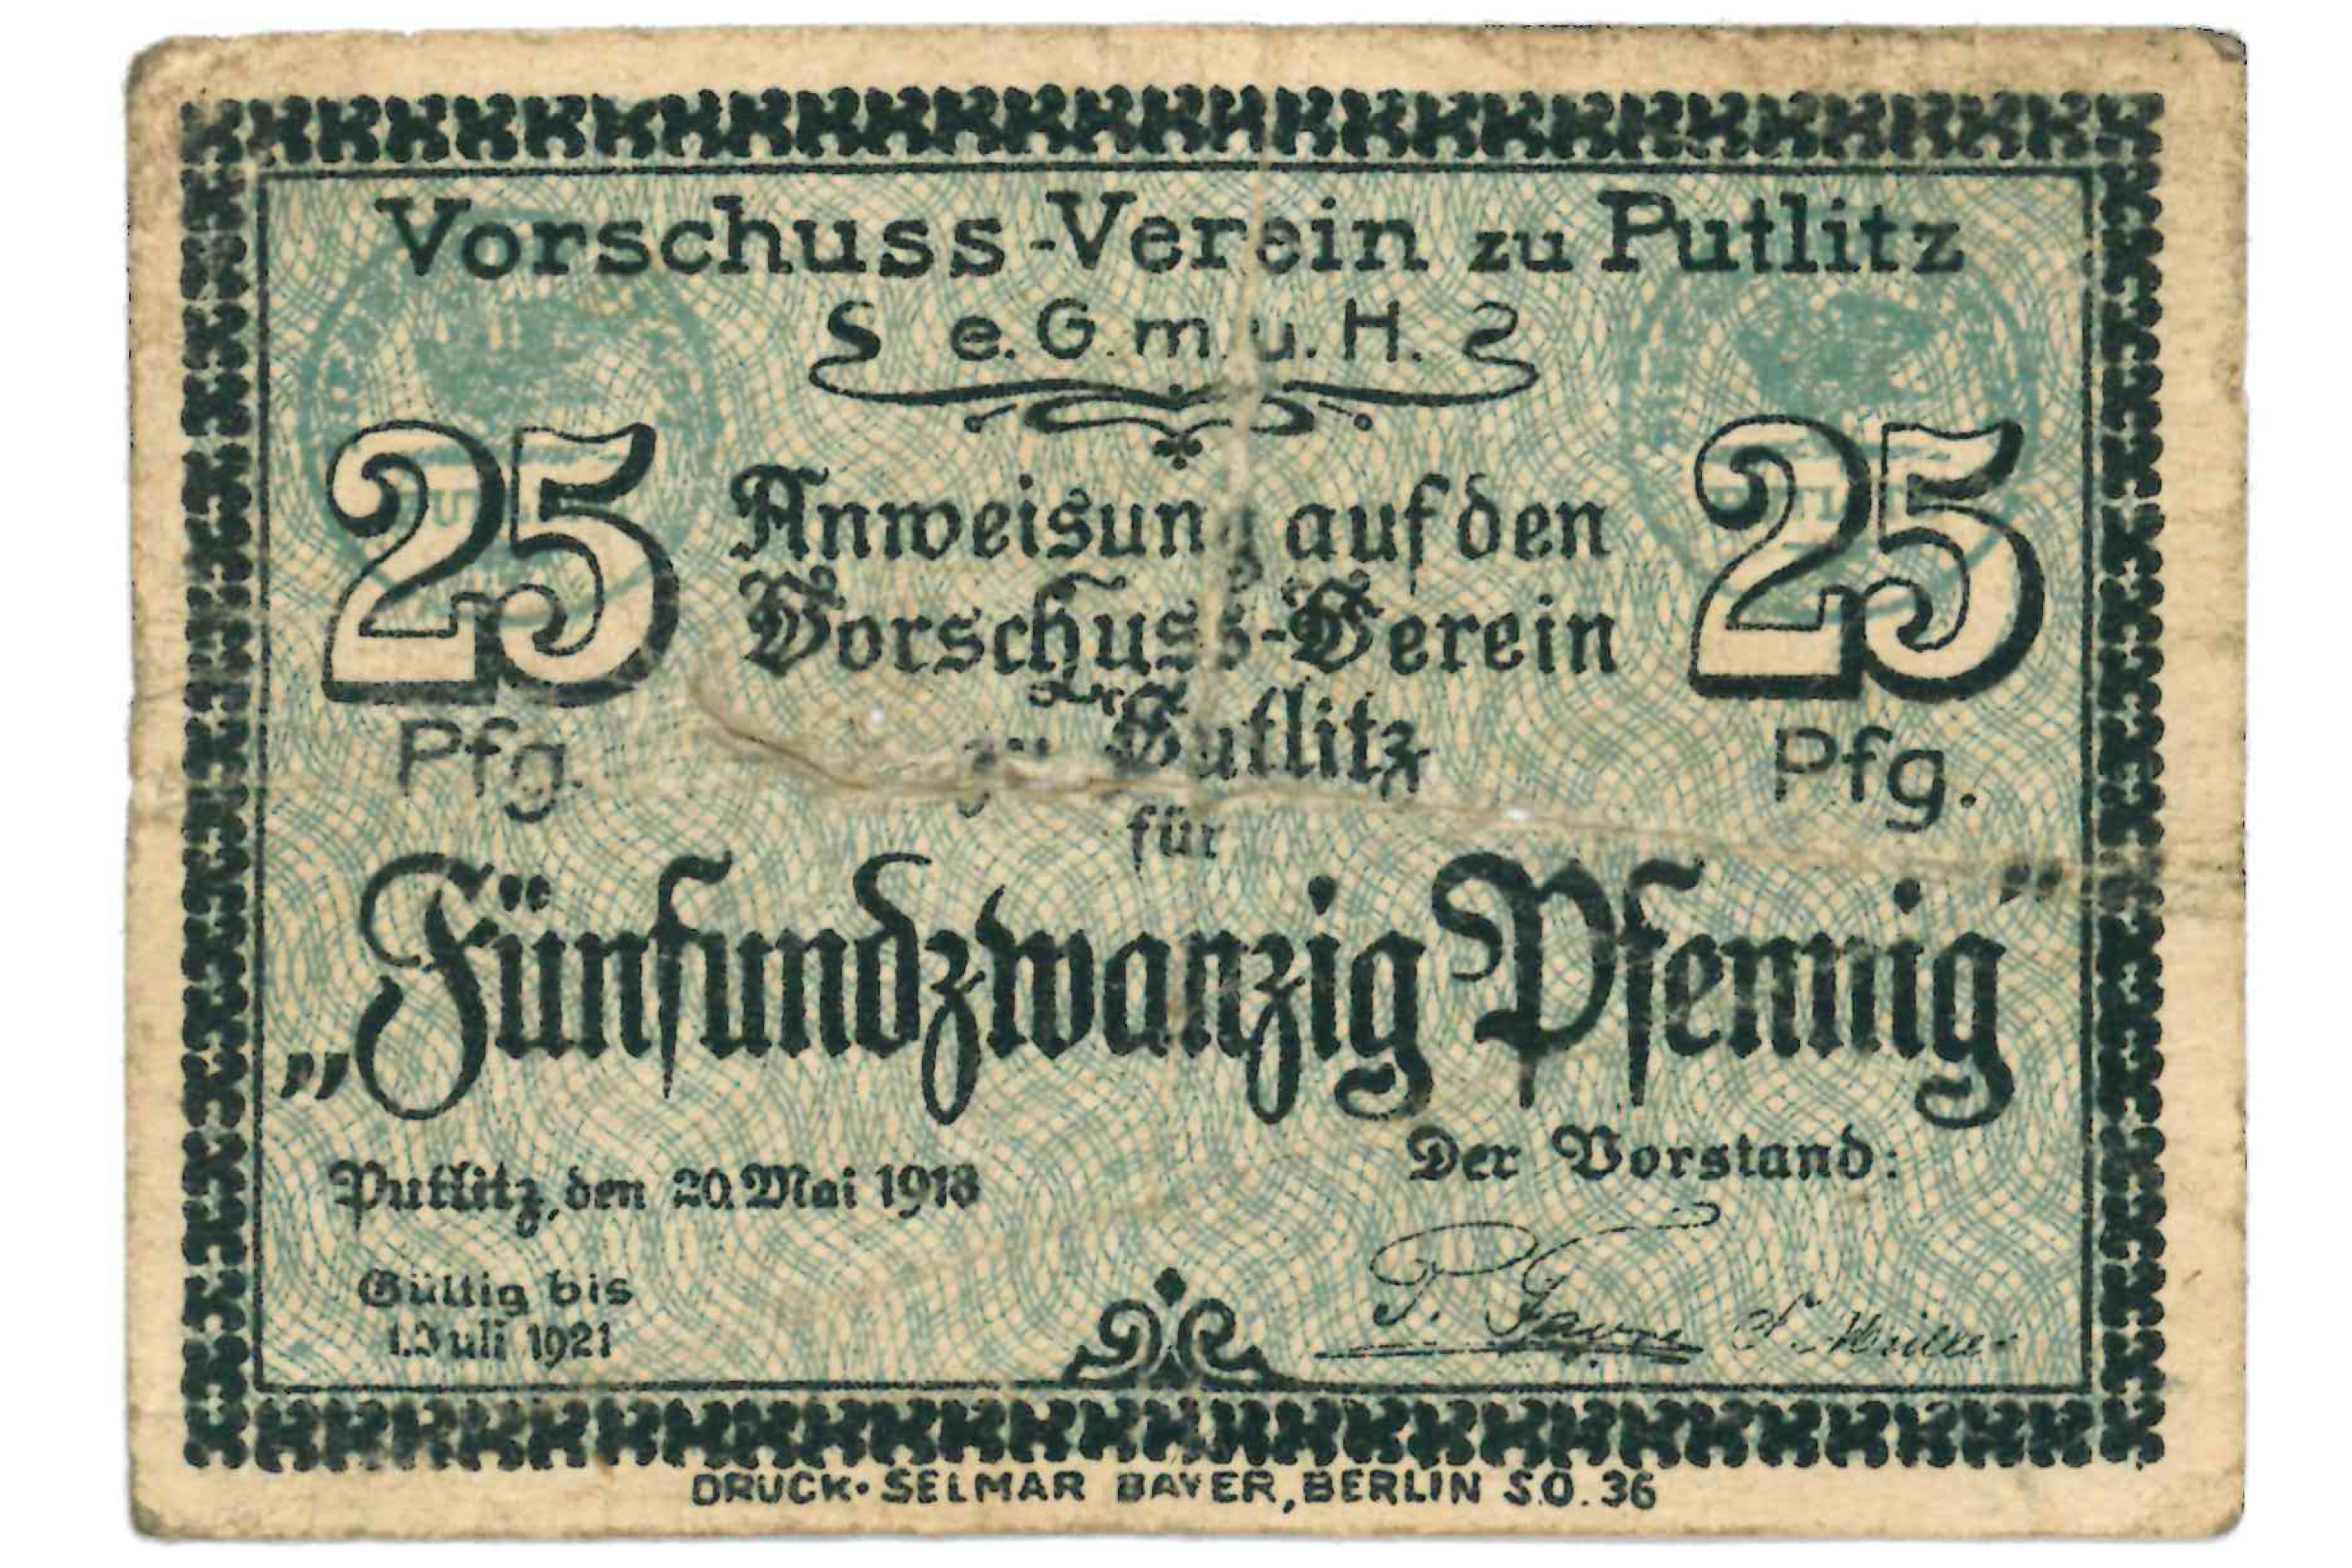 Gutschein des Vorschuss-Vereins zu Putlitz, 25 Pfennig (Museumsfabrik Pritzwalk CC BY-SA)